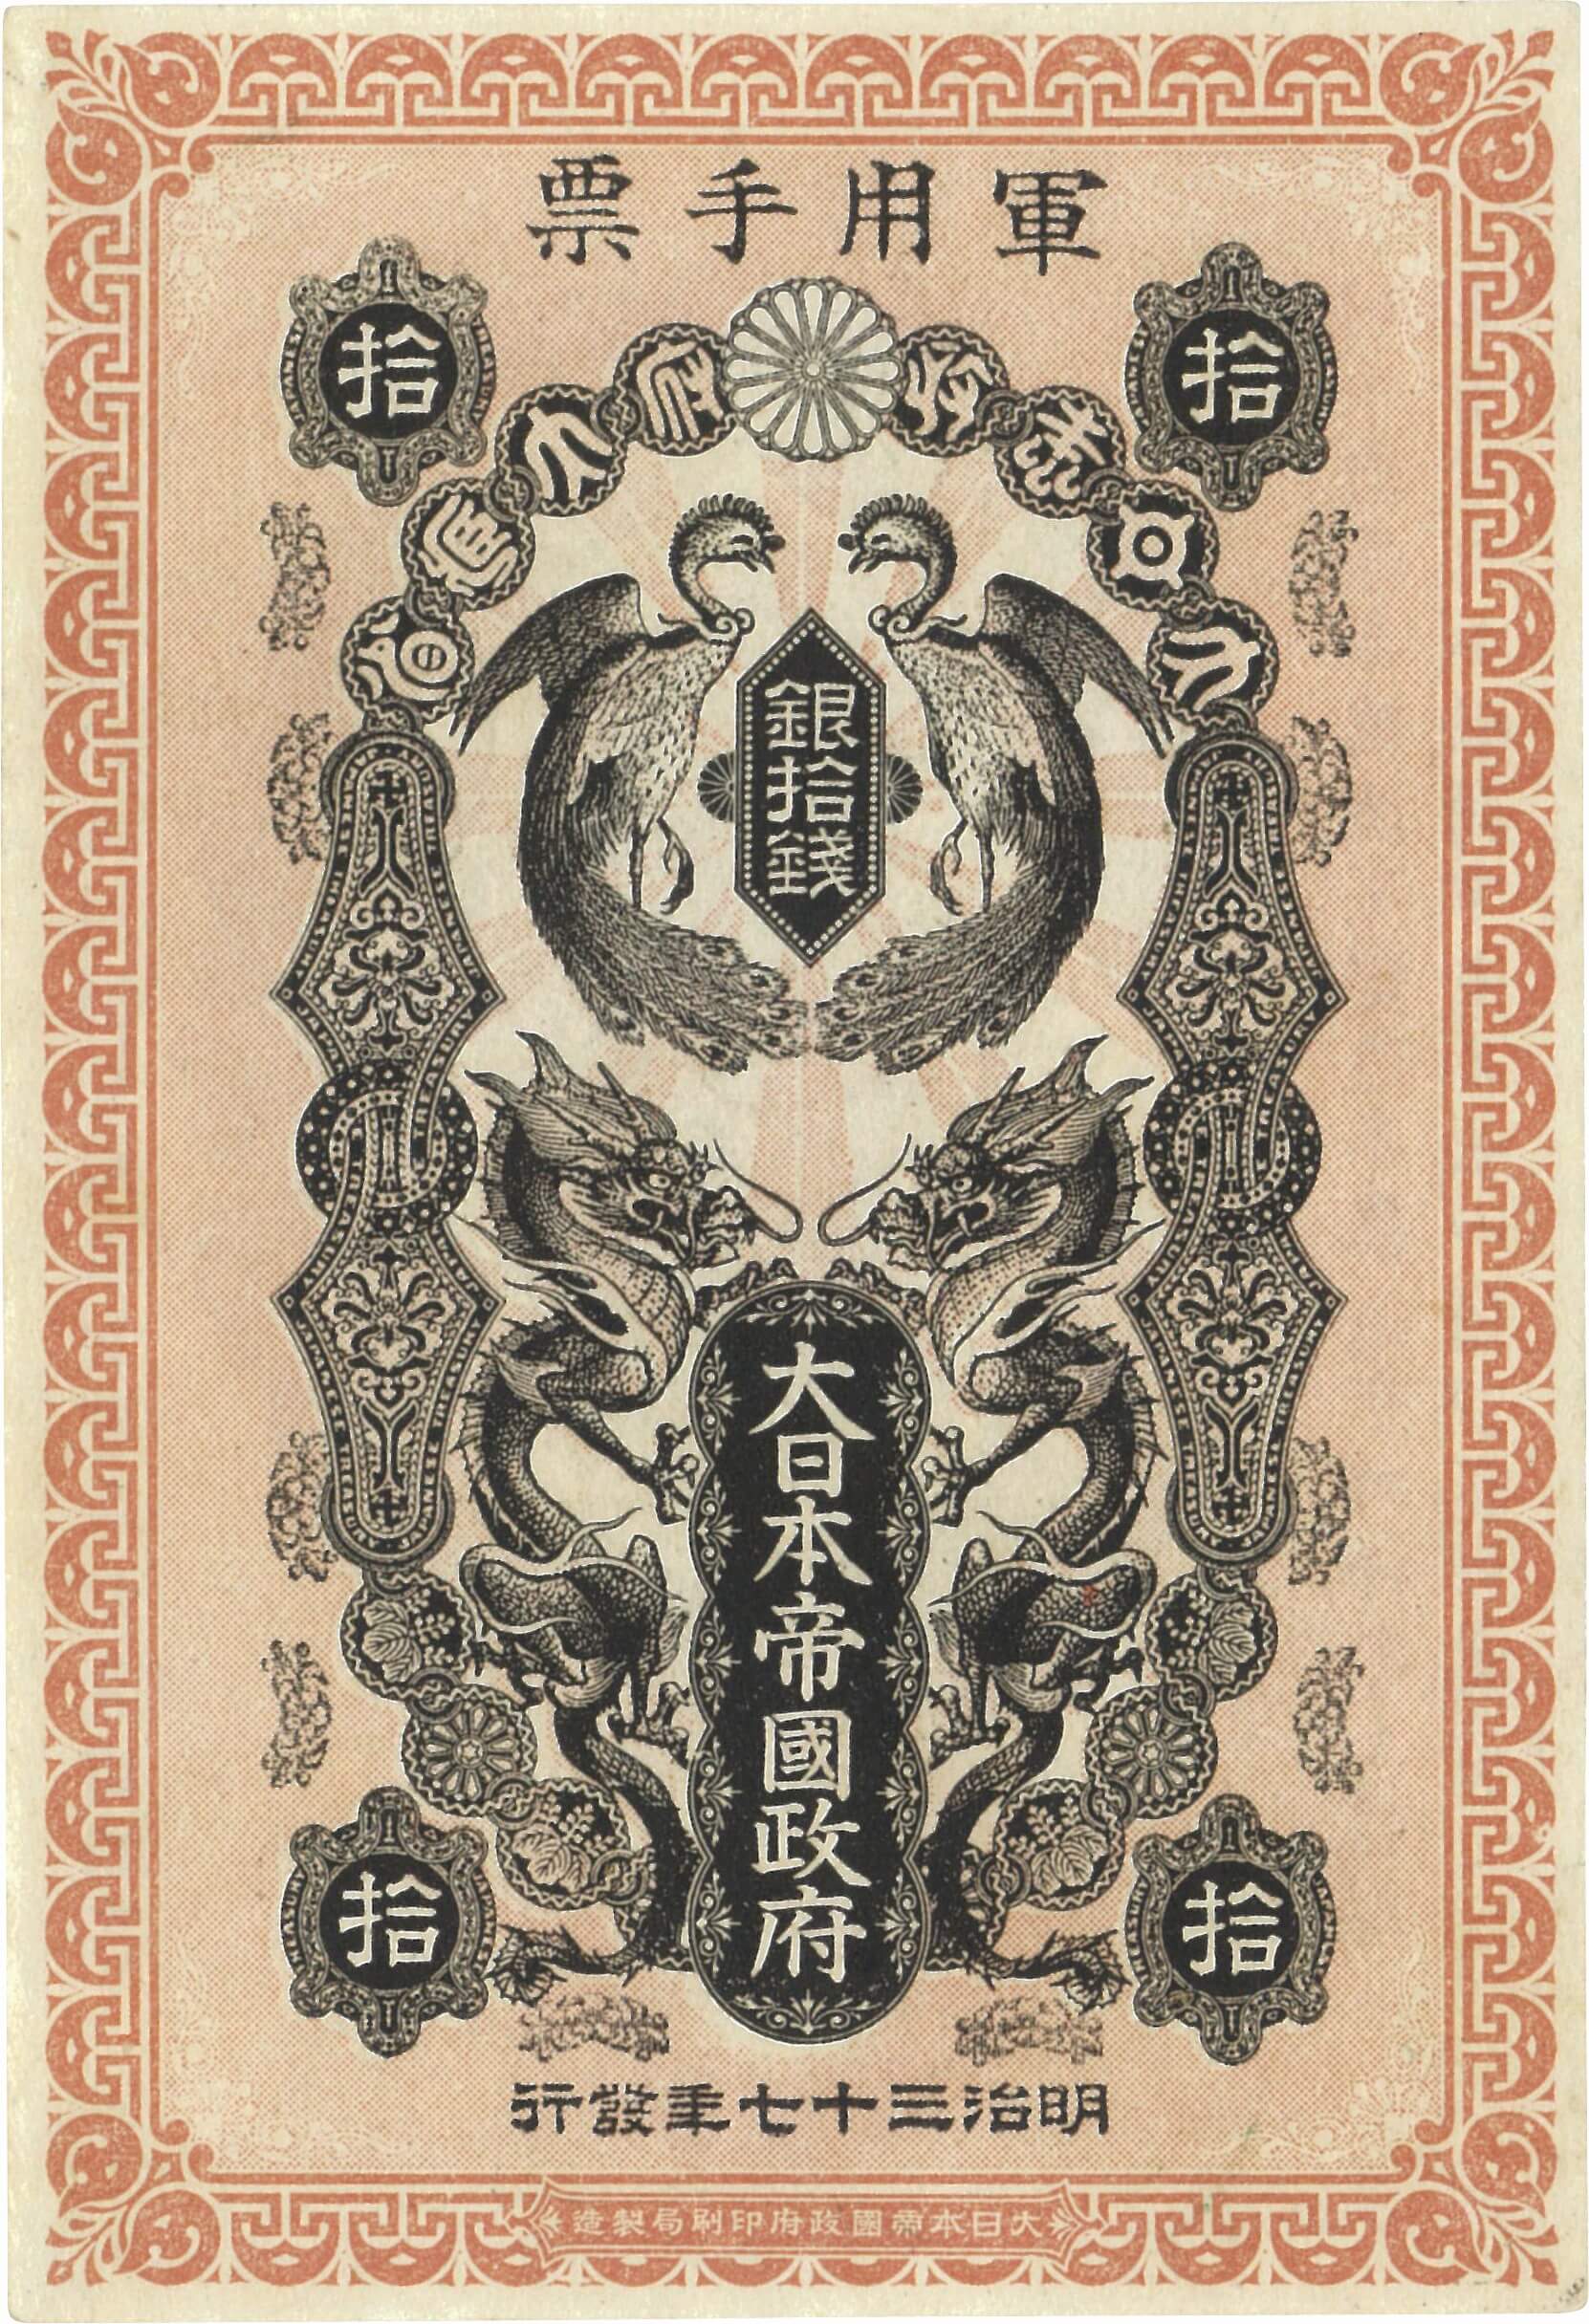 日本-Japan. 日露戦争軍票 銀10銭札 3枚揃 明治37年(1904年) JNDA-軍2E 